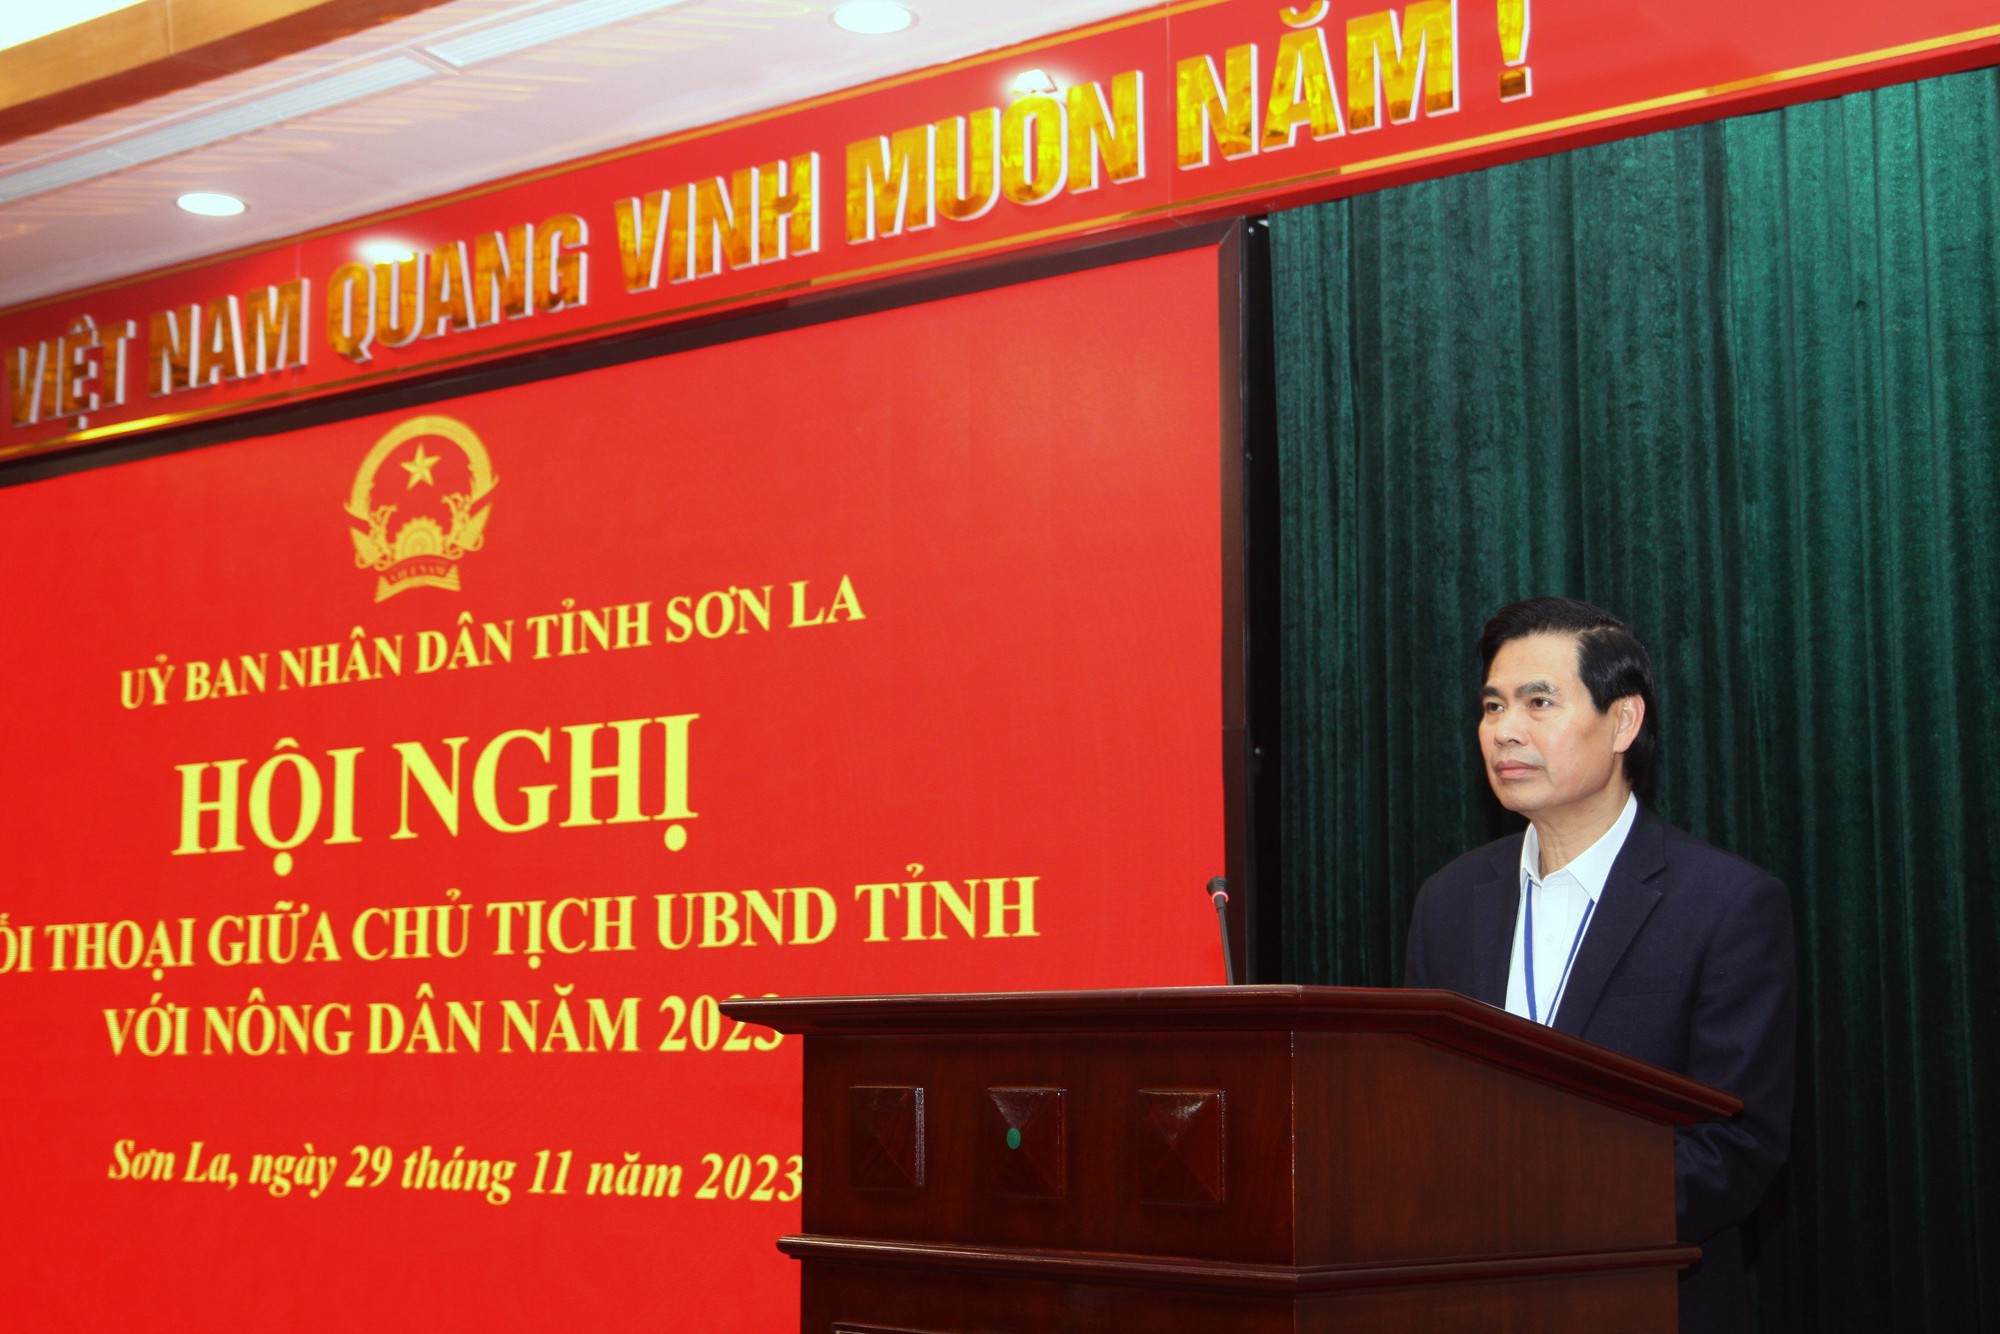 Hôm nay, Chủ tịch UBND tỉnh Sơn La đối thoại với nông dân năm 2023 - Ảnh 1.